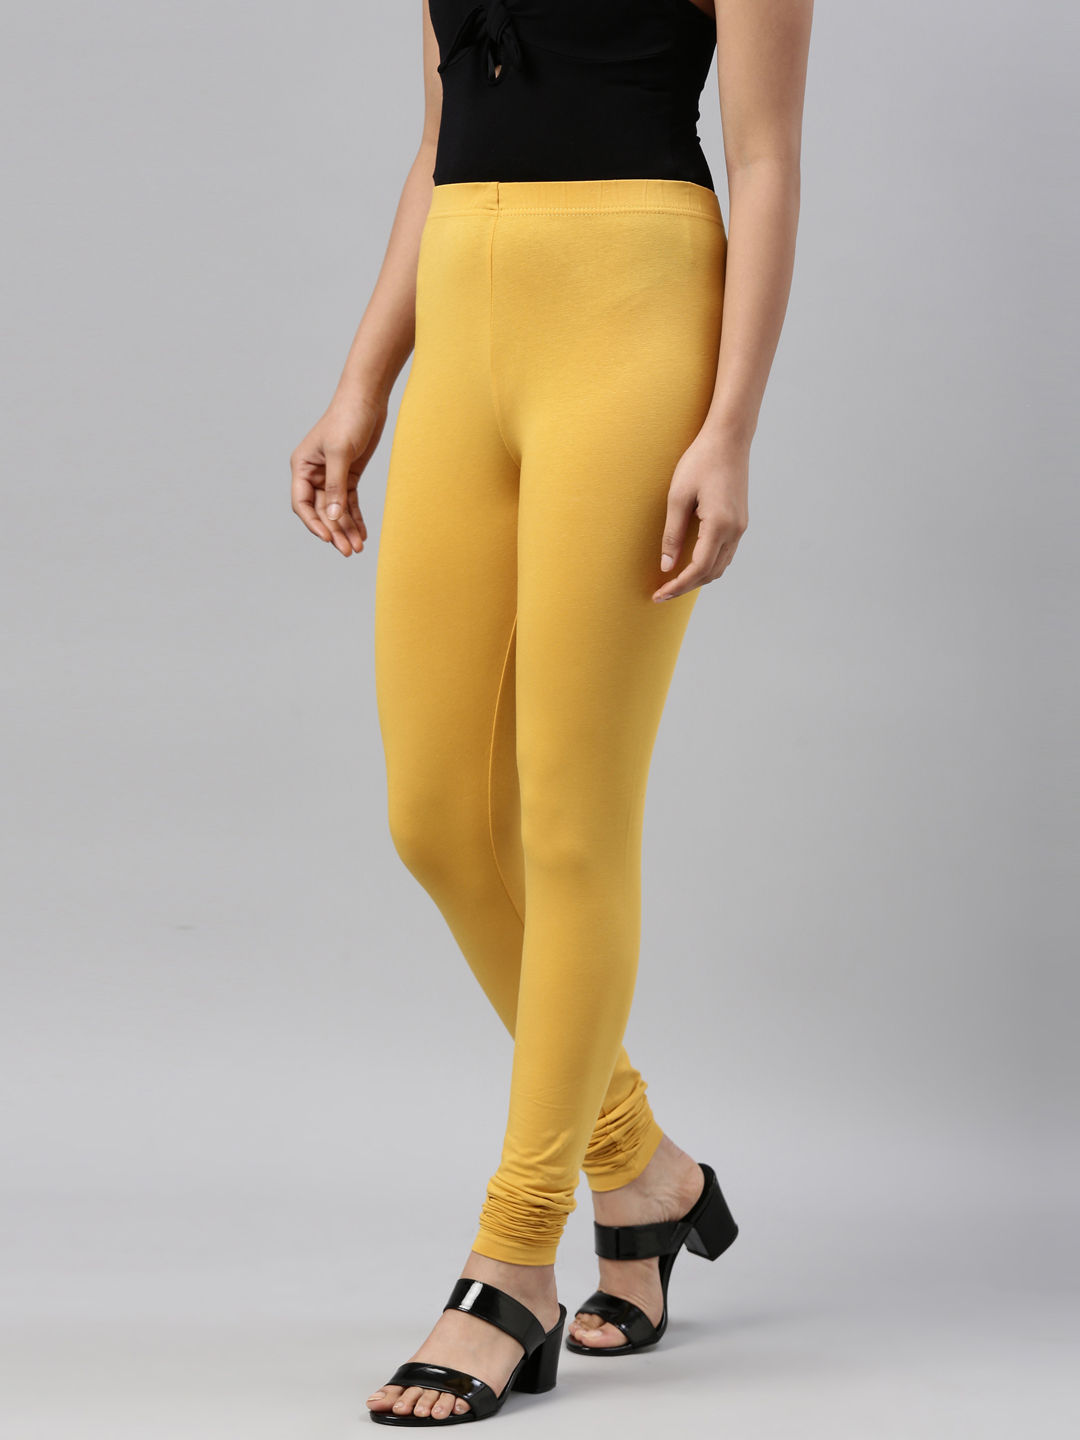 Buy Elleven Yellow Leggings for Women's Online @ Tata CLiQ